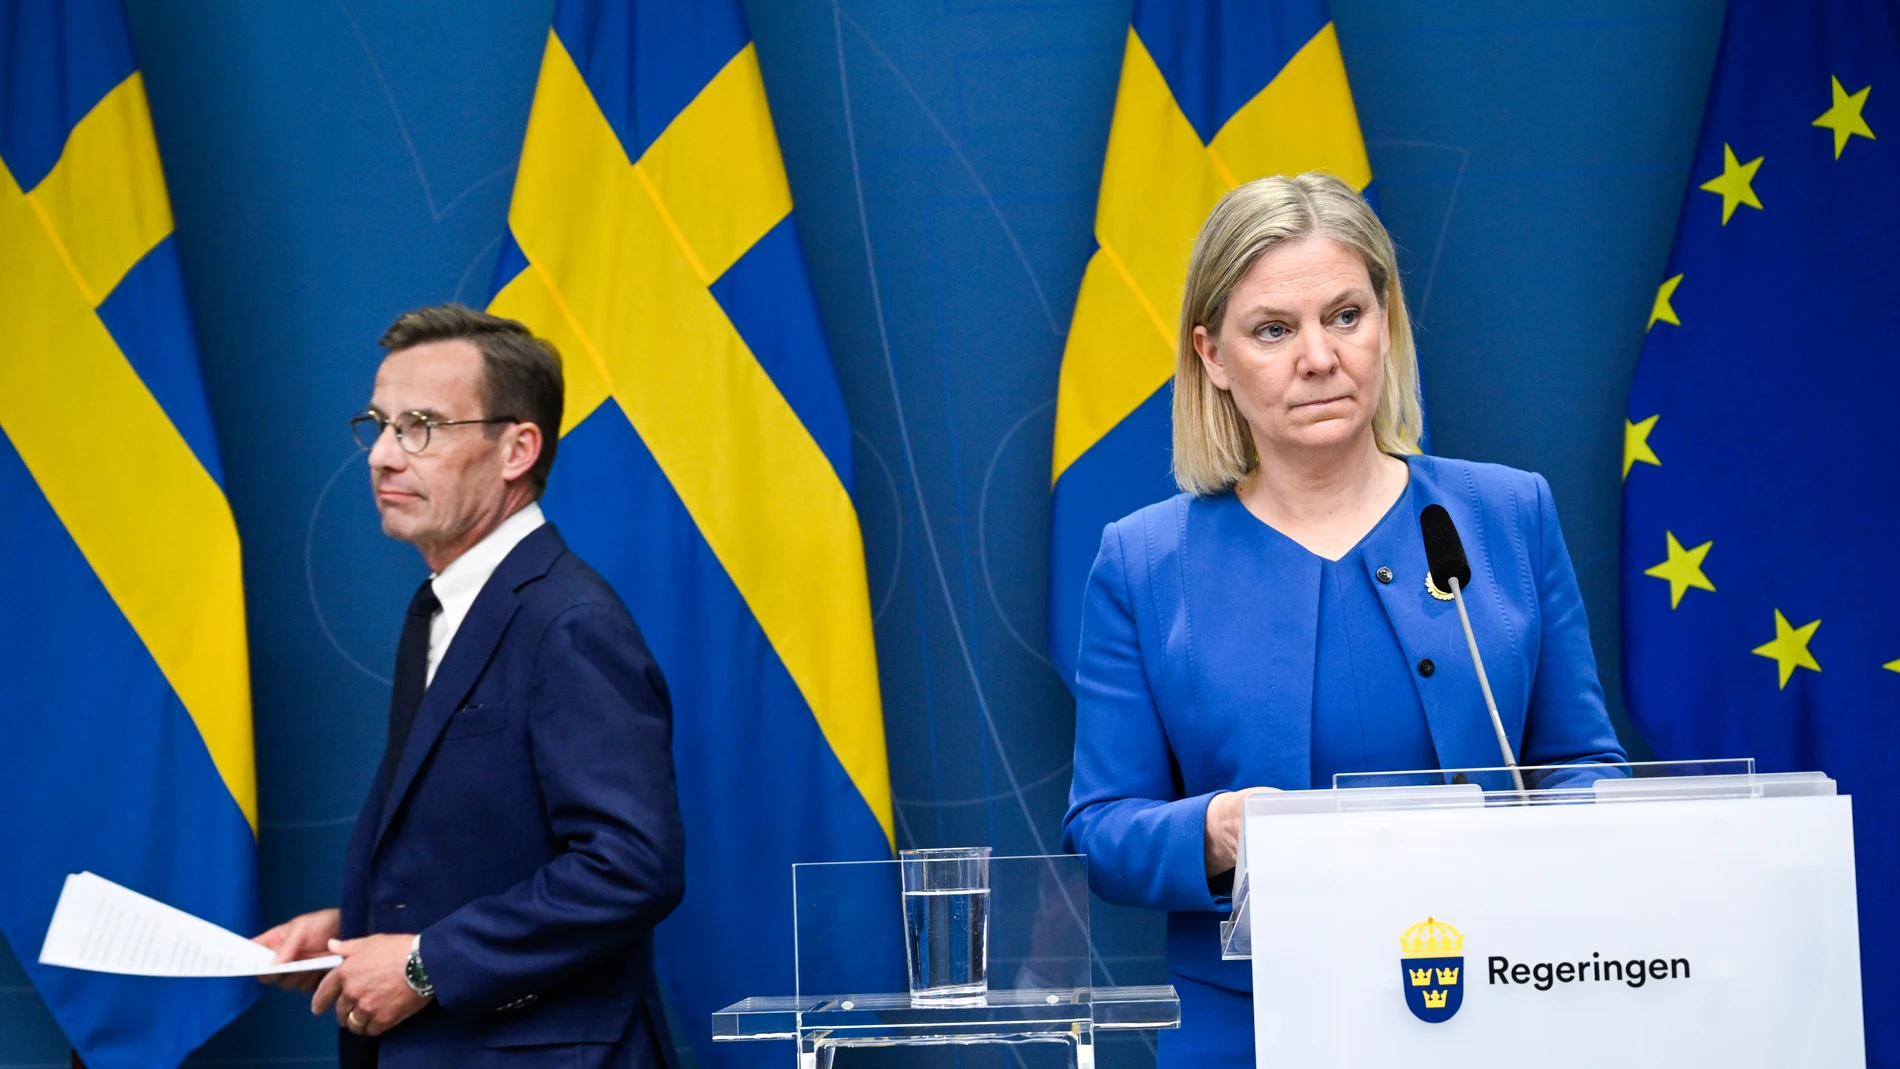 La primera ministra de Suecia, Magdalena Andersson, confirma que solicitarán la adhesión a la OTAN.